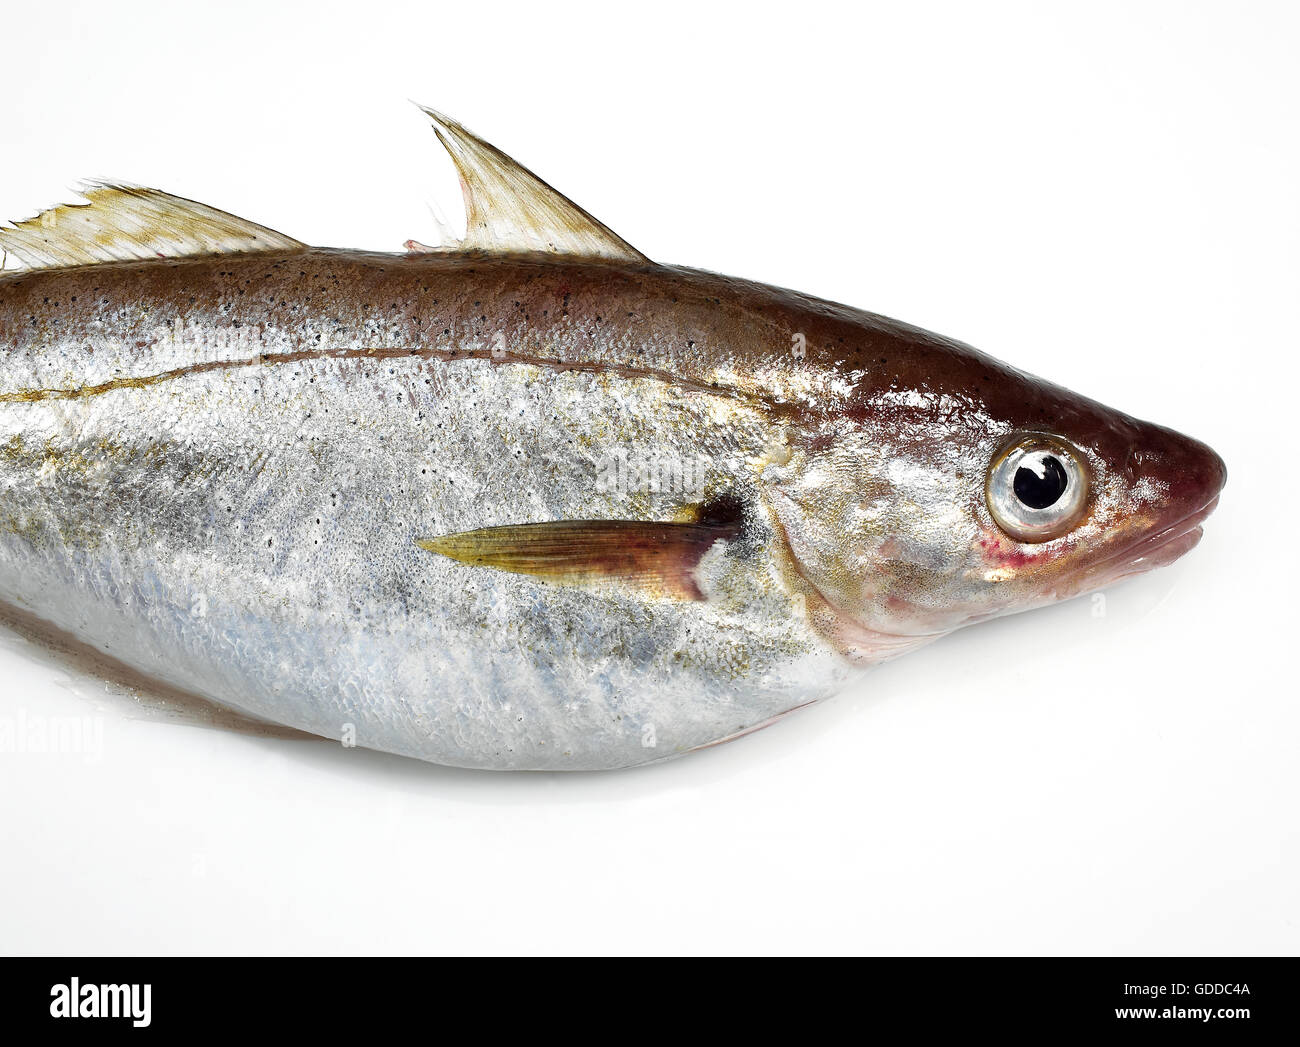 Whiting, merlangius merlangus, Fresh Fish  against White Background Stock Photo